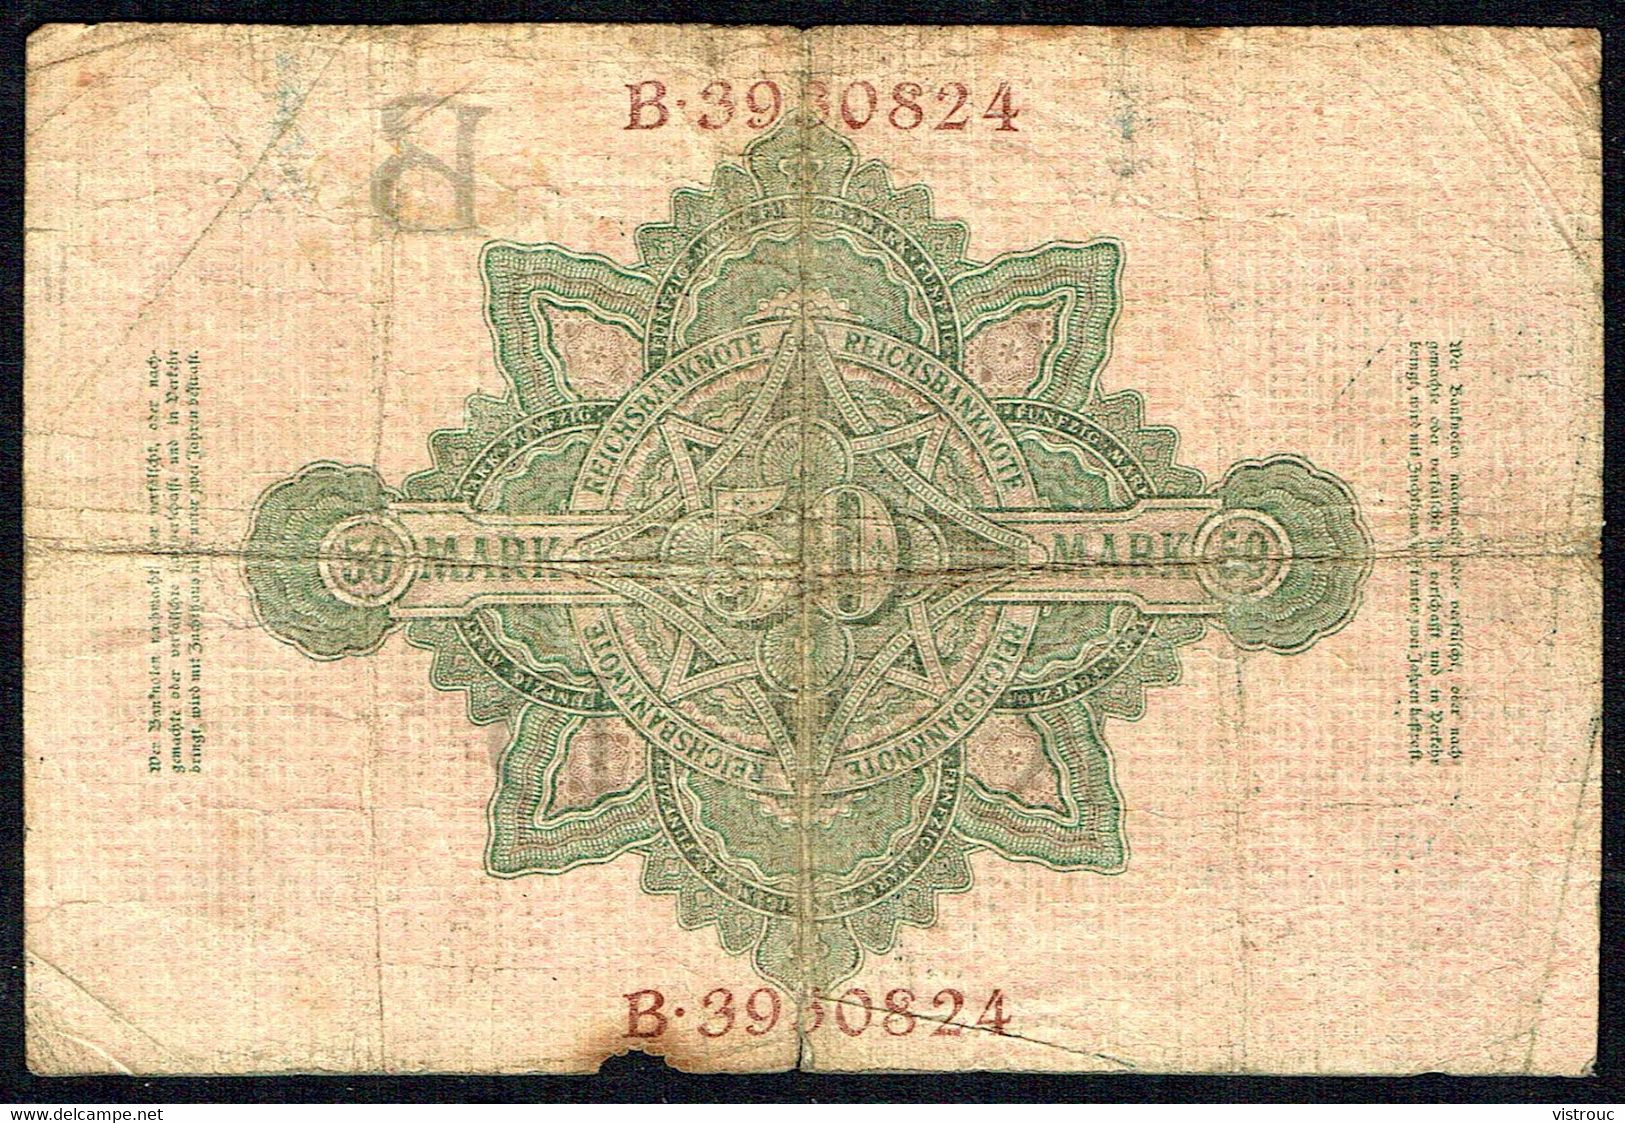 ALLEMAGNE - Reichbanknote - Fünfzig Mark - 50 Mark - Usagé - Used - B N° 3930824 - Année / Year 1910. - 50 Mark